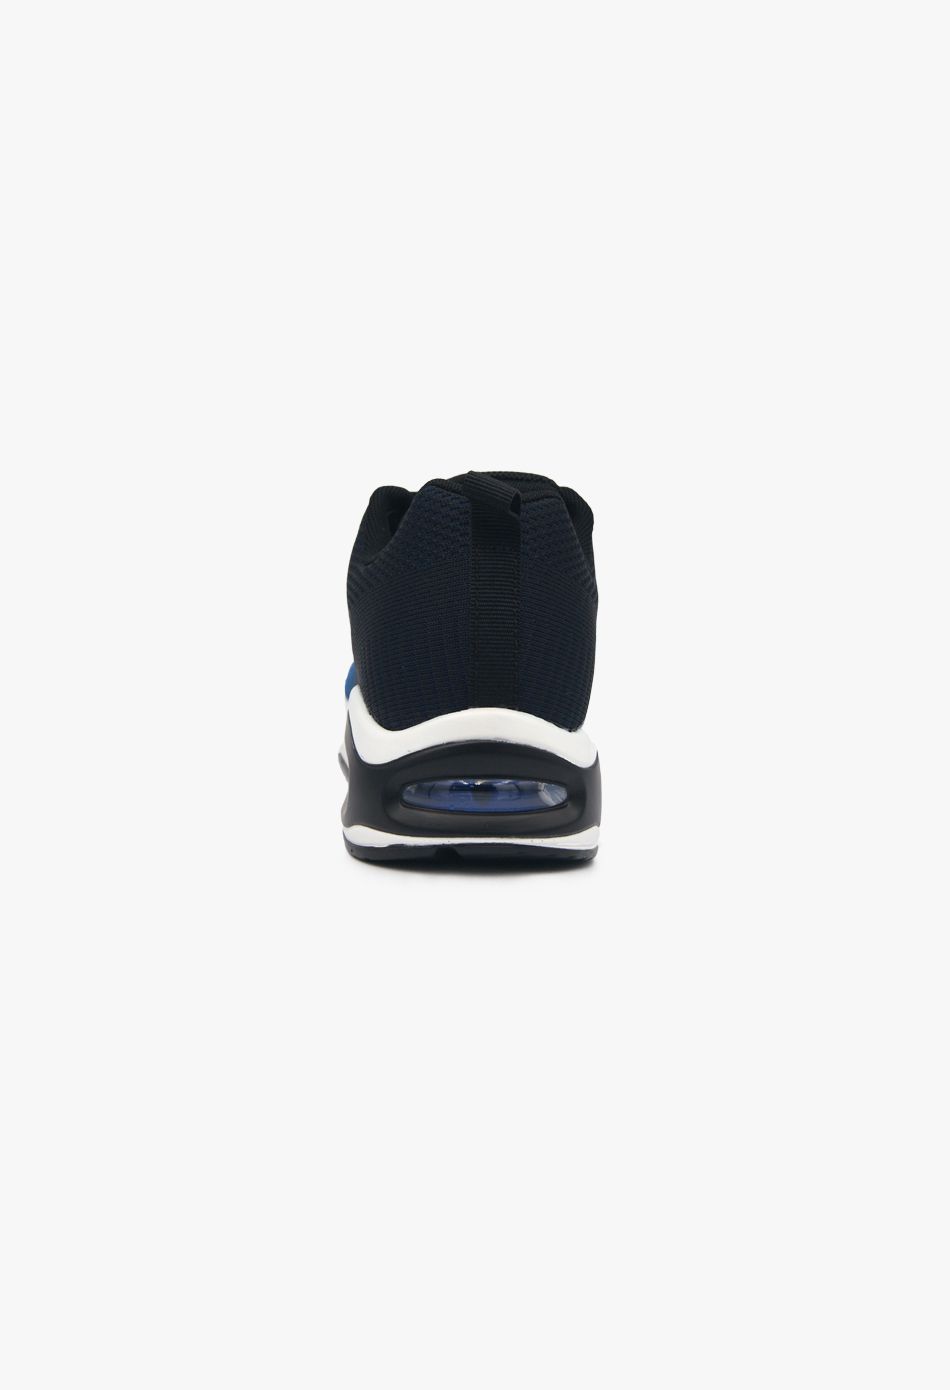 Ανδρικά Αθλητικά Sneaker με Αερόσολα Μπλε / U0121-navy ΑΘΛΗΤΙΚΑ & SNEAKERS joya.gr